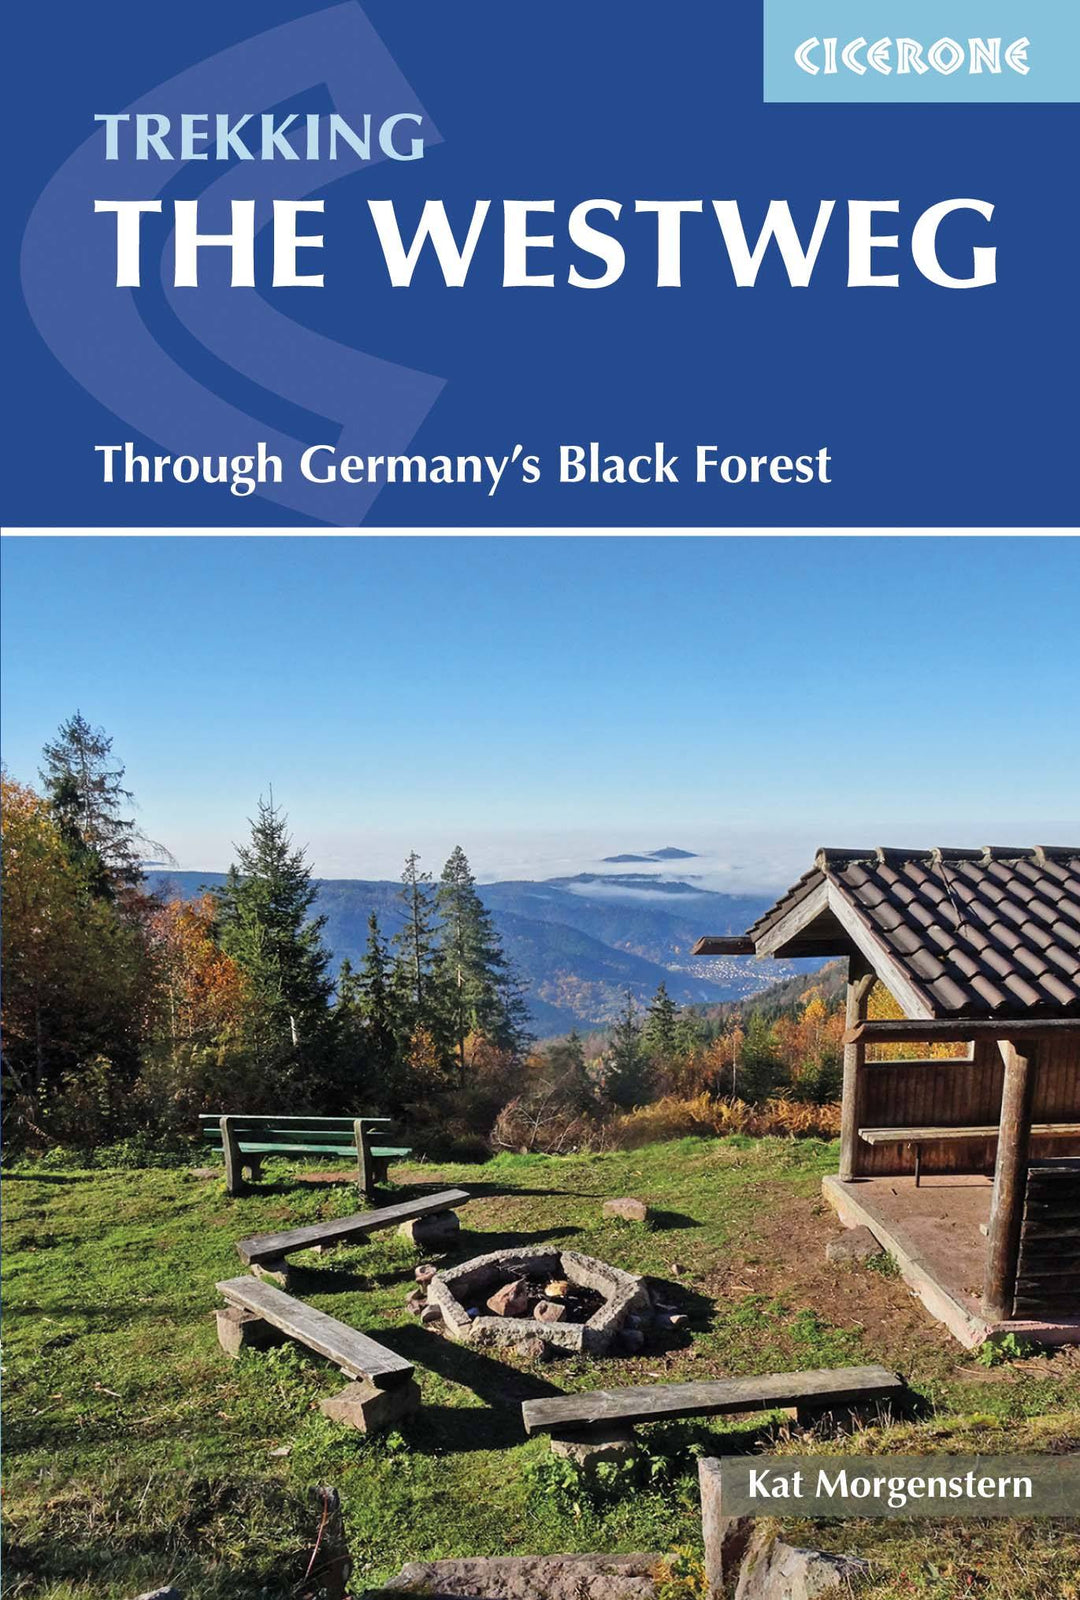 Guide de randonnées (en anglais) - Westweg trekking through Germany's Black Forest | Cicerone guide de randonnée Cicerone 